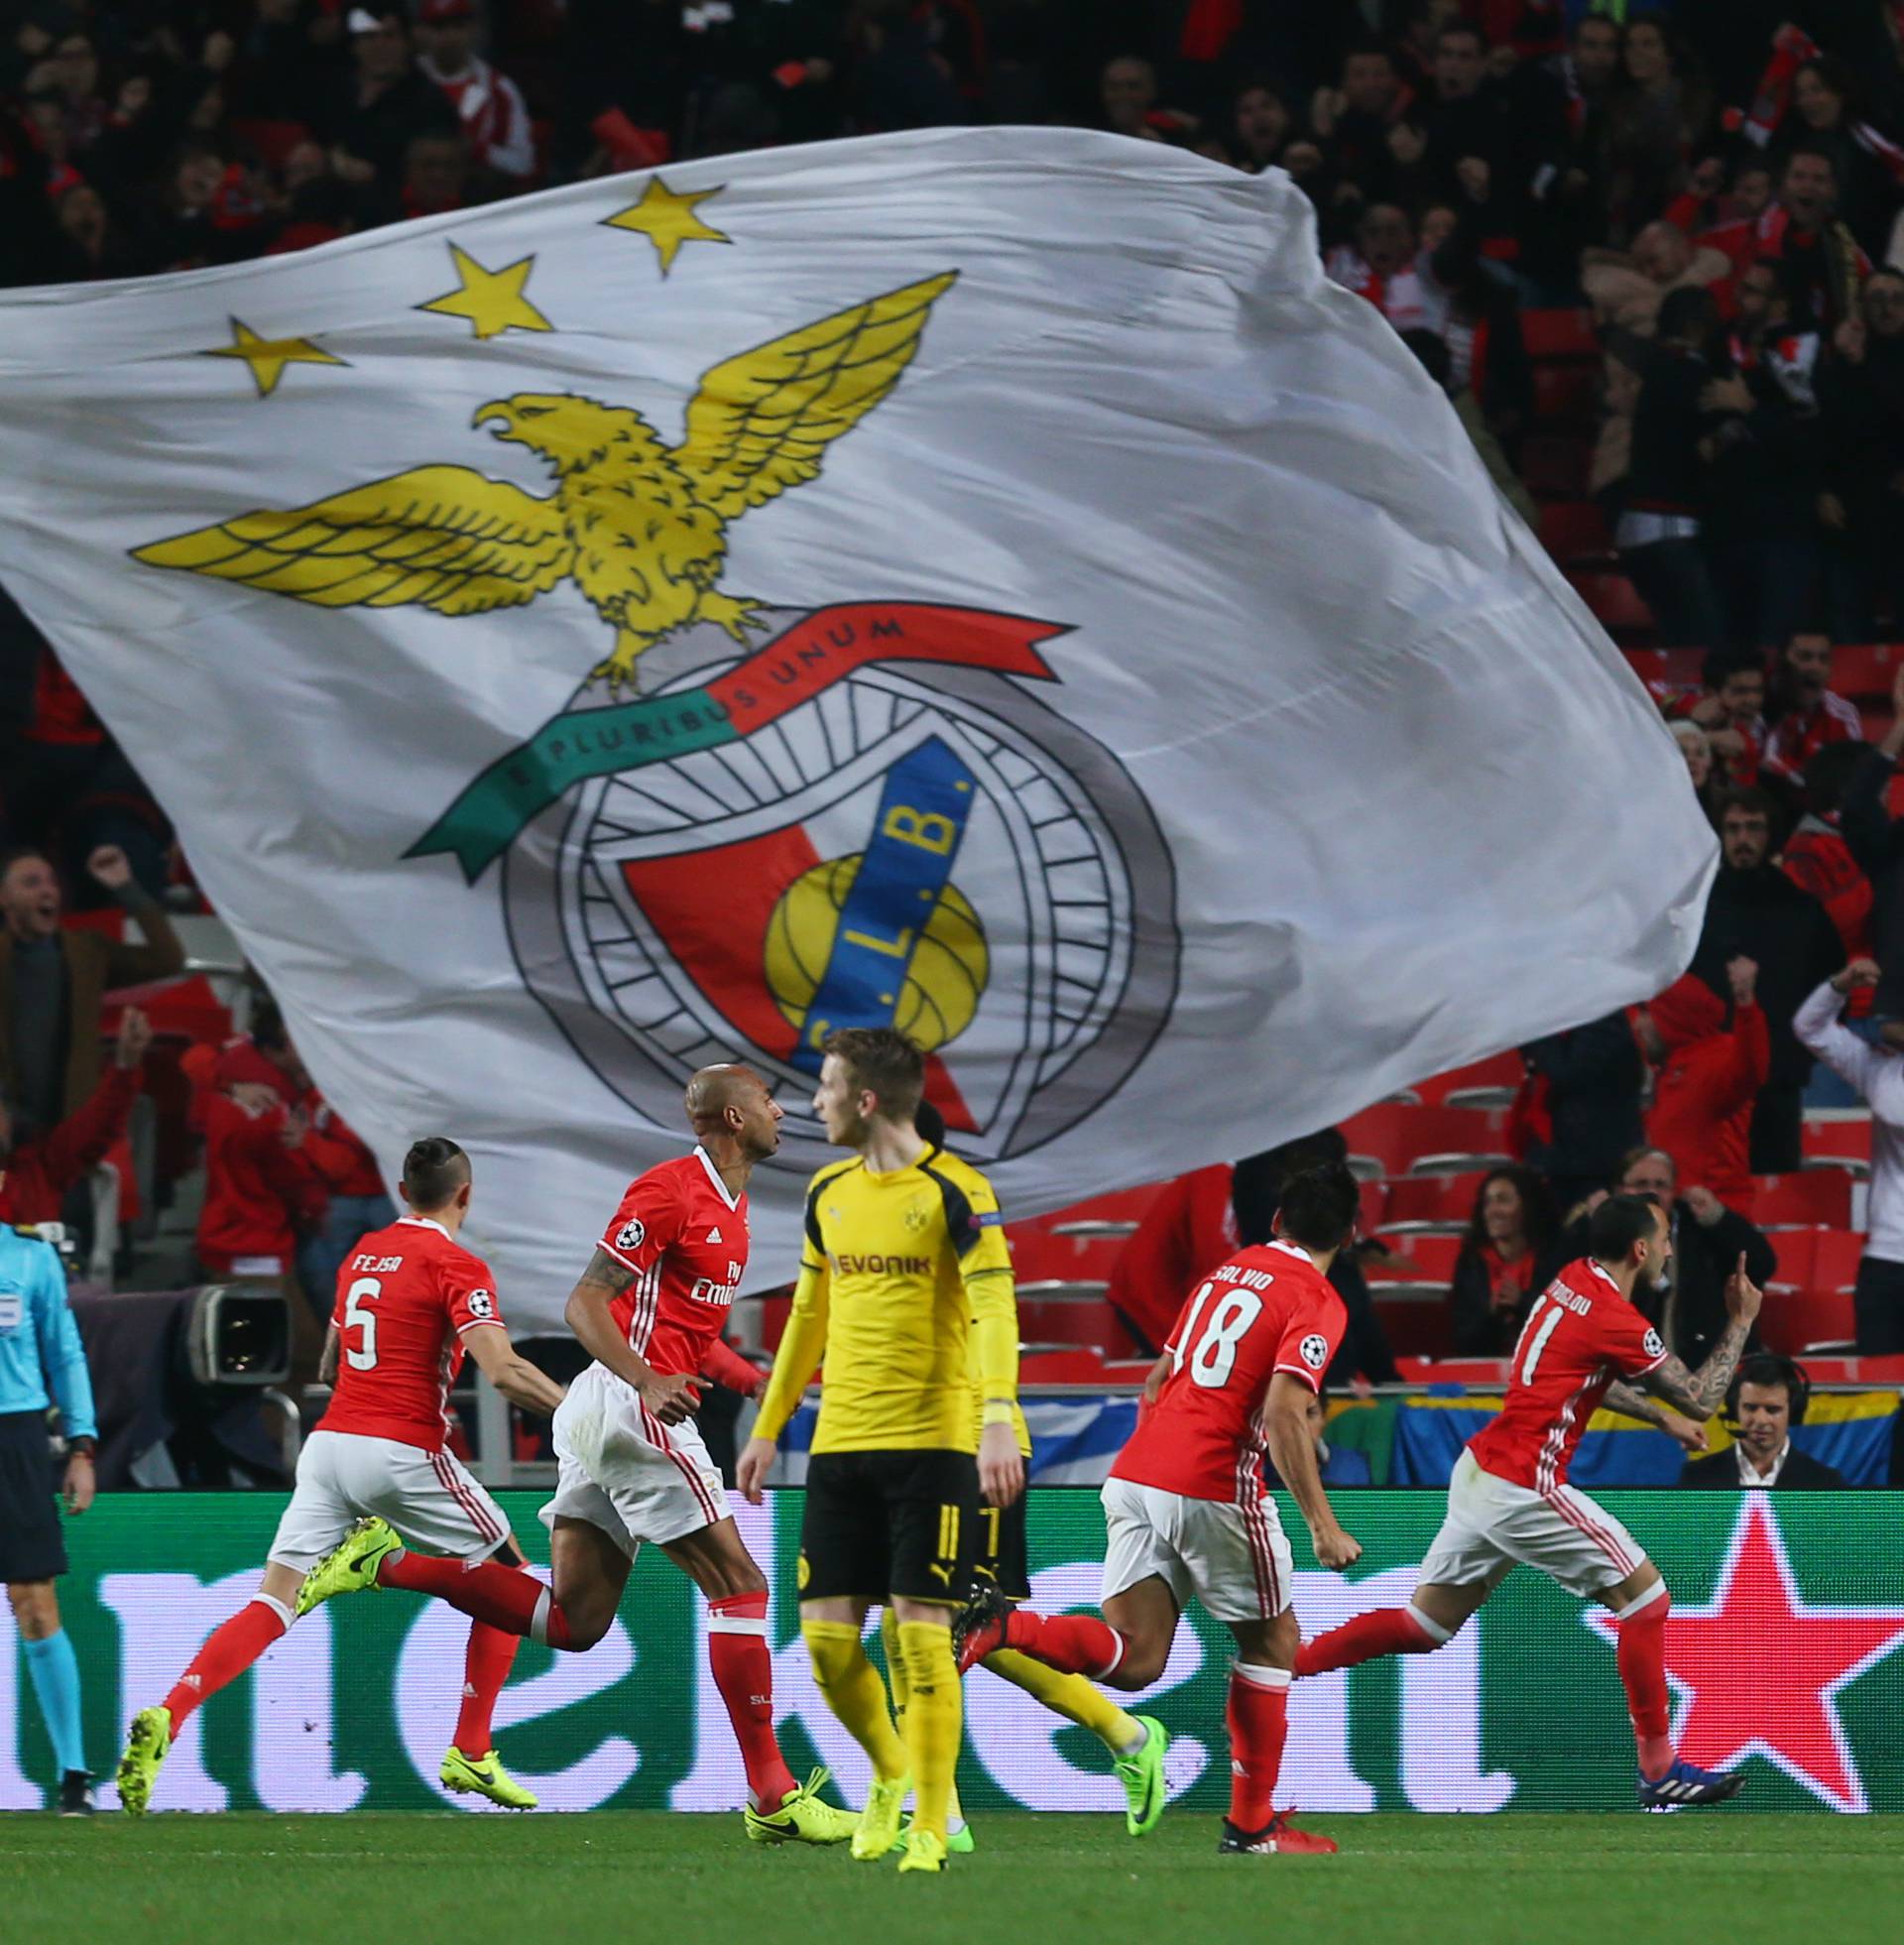 Benfica's Kostas Mitroglou celebrates scoring their first goal